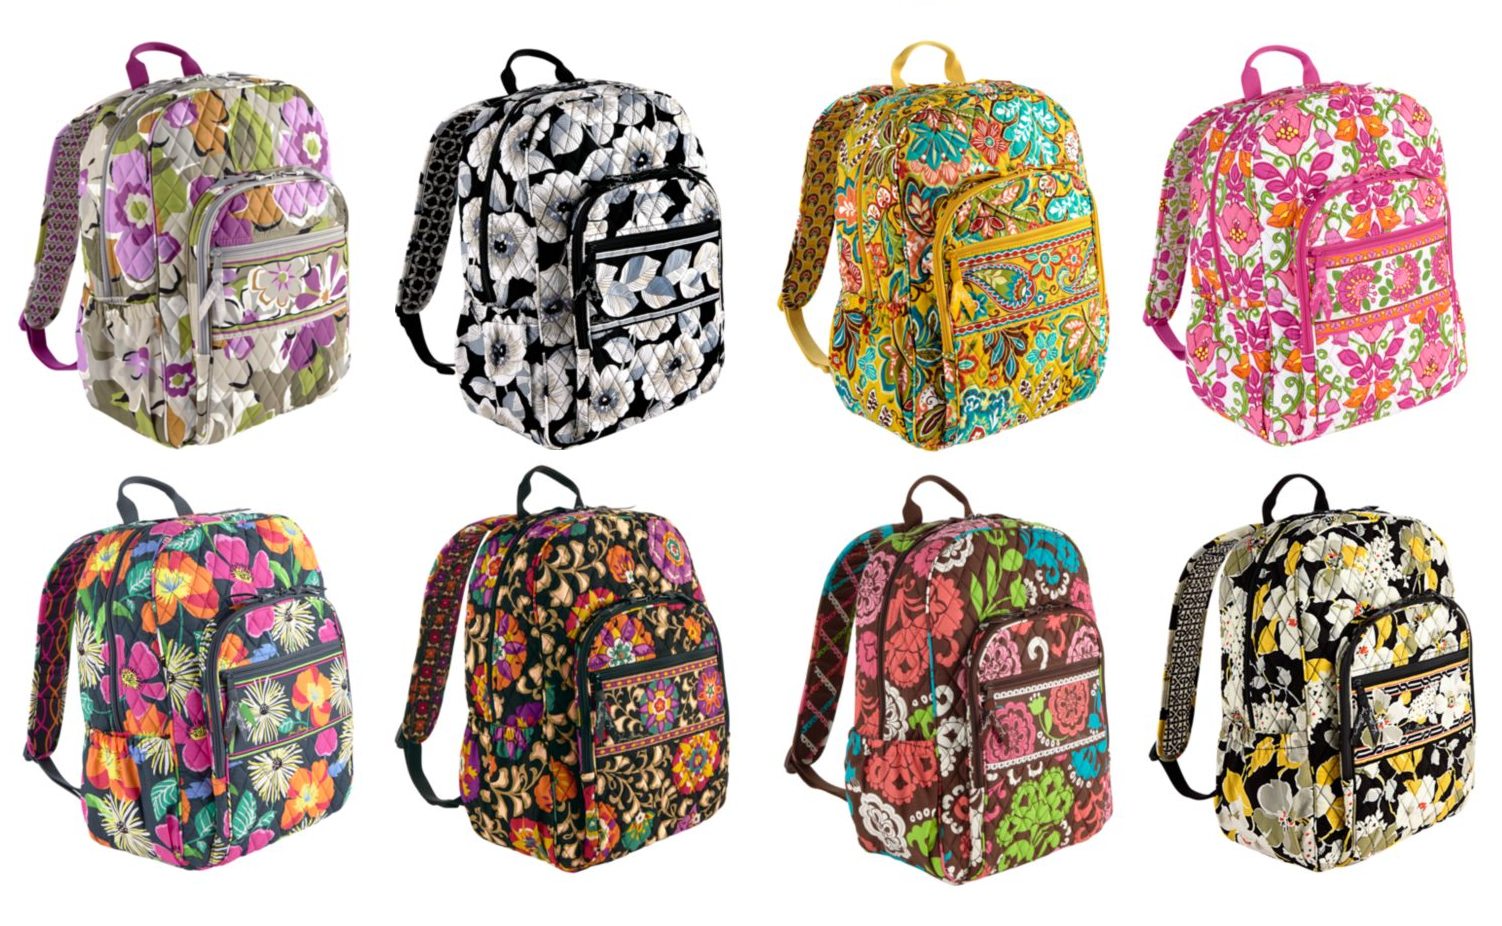 jaimeeph : Cute backpacks for school